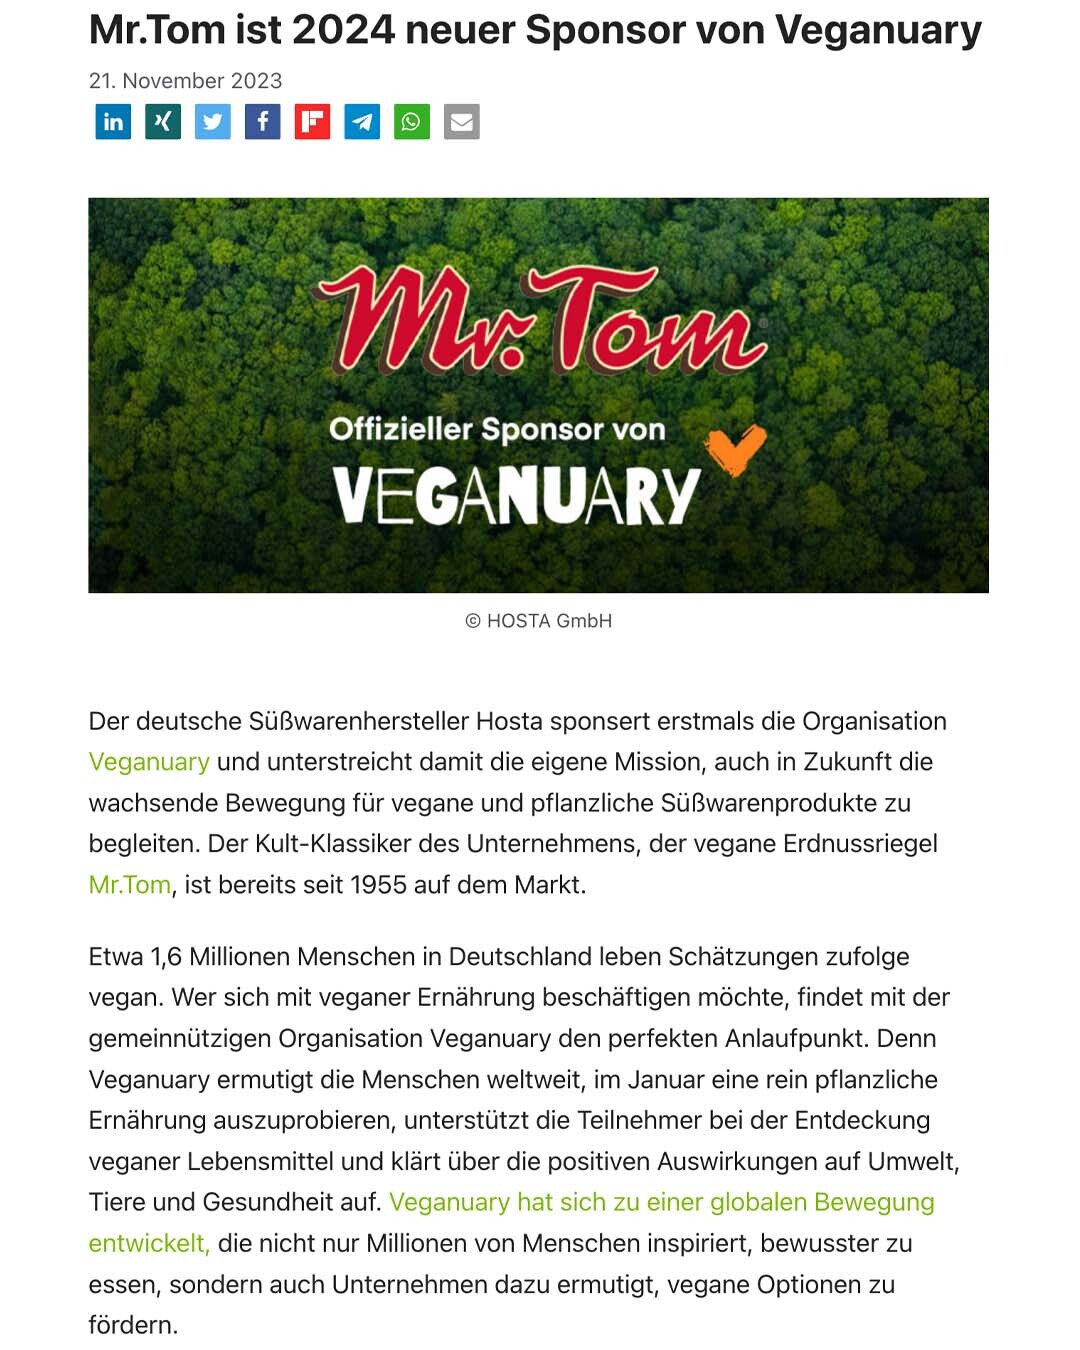 PR-Arbeit: Clipping von vegconomist zur Pressemitteilung über Veganuary Sponsoring durch die Marke Mr.Tom